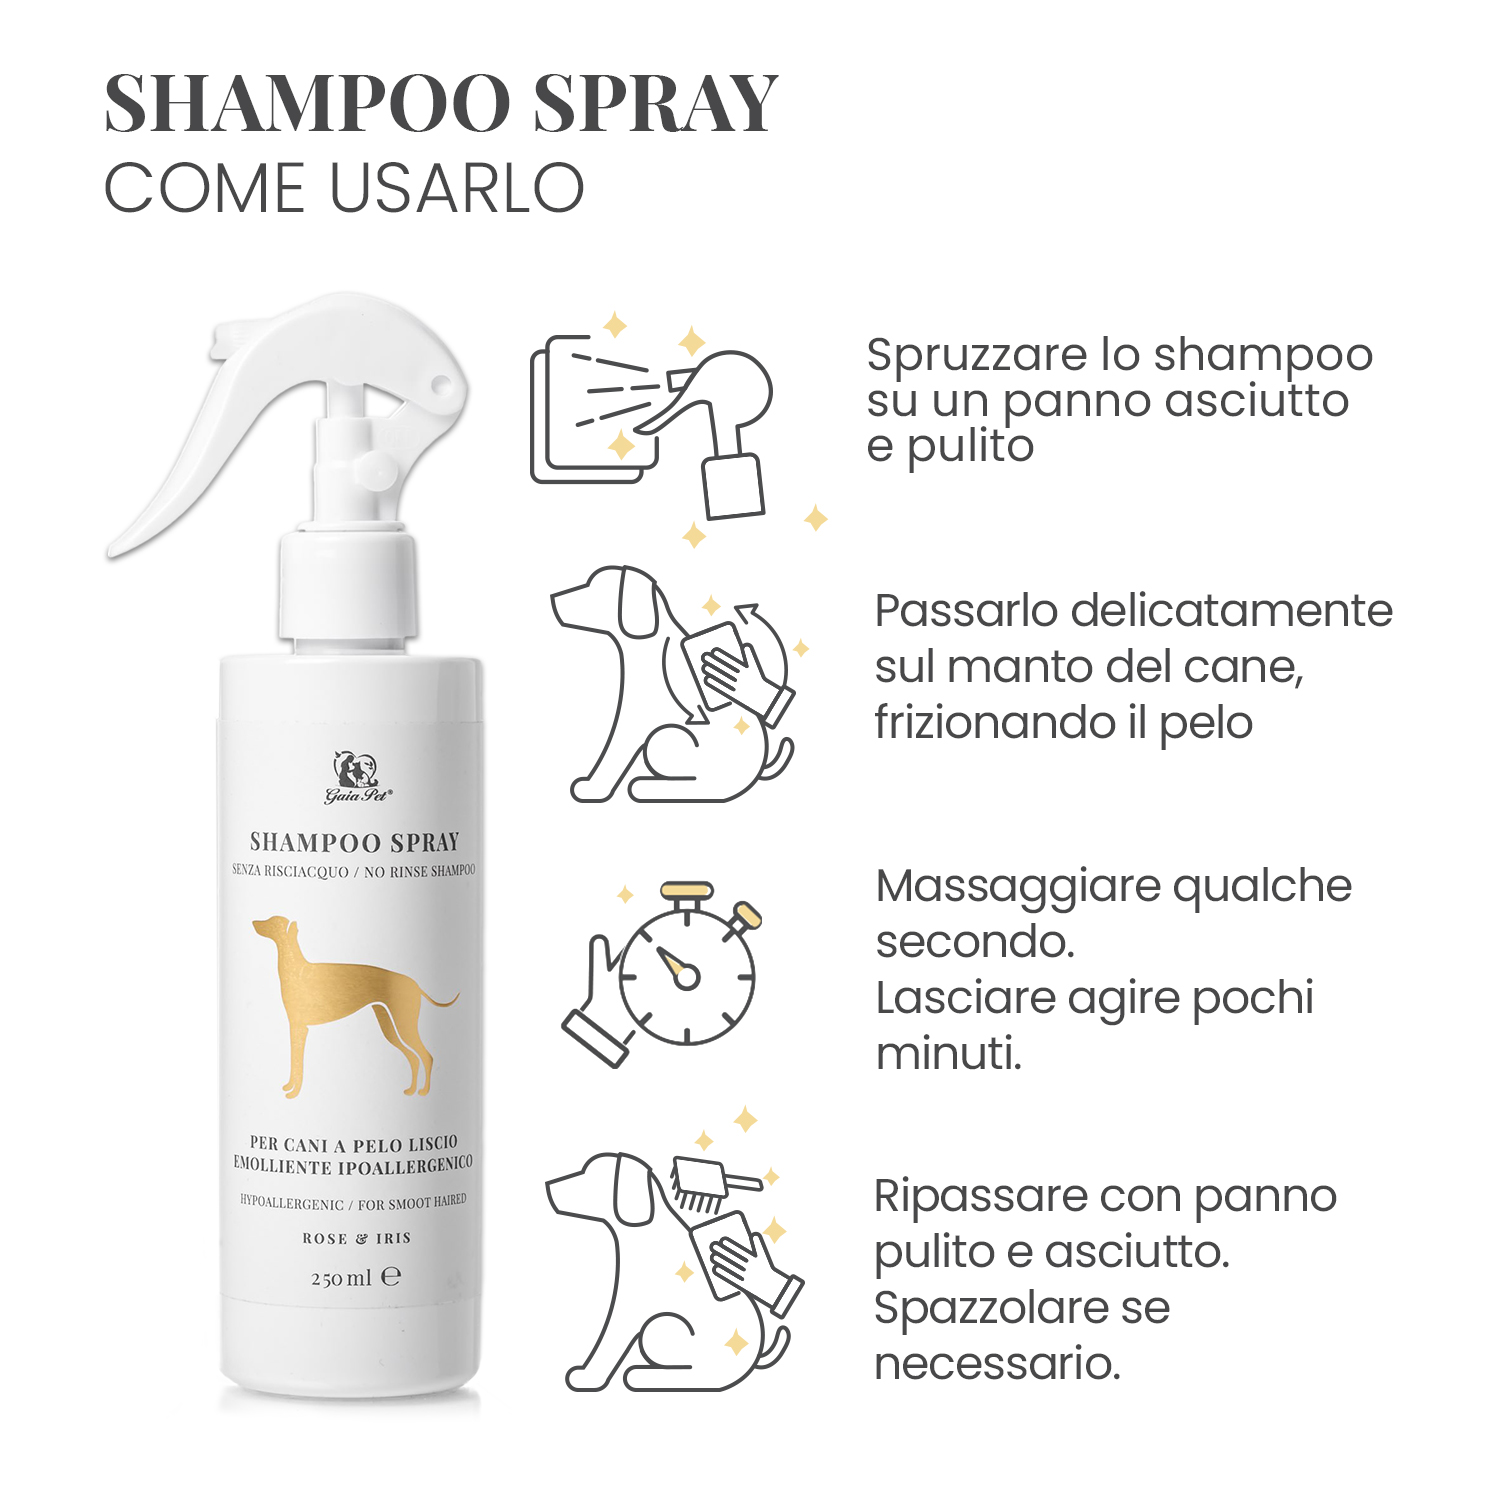 Infografica che illustra le istruzioni d'uso dello shampoo